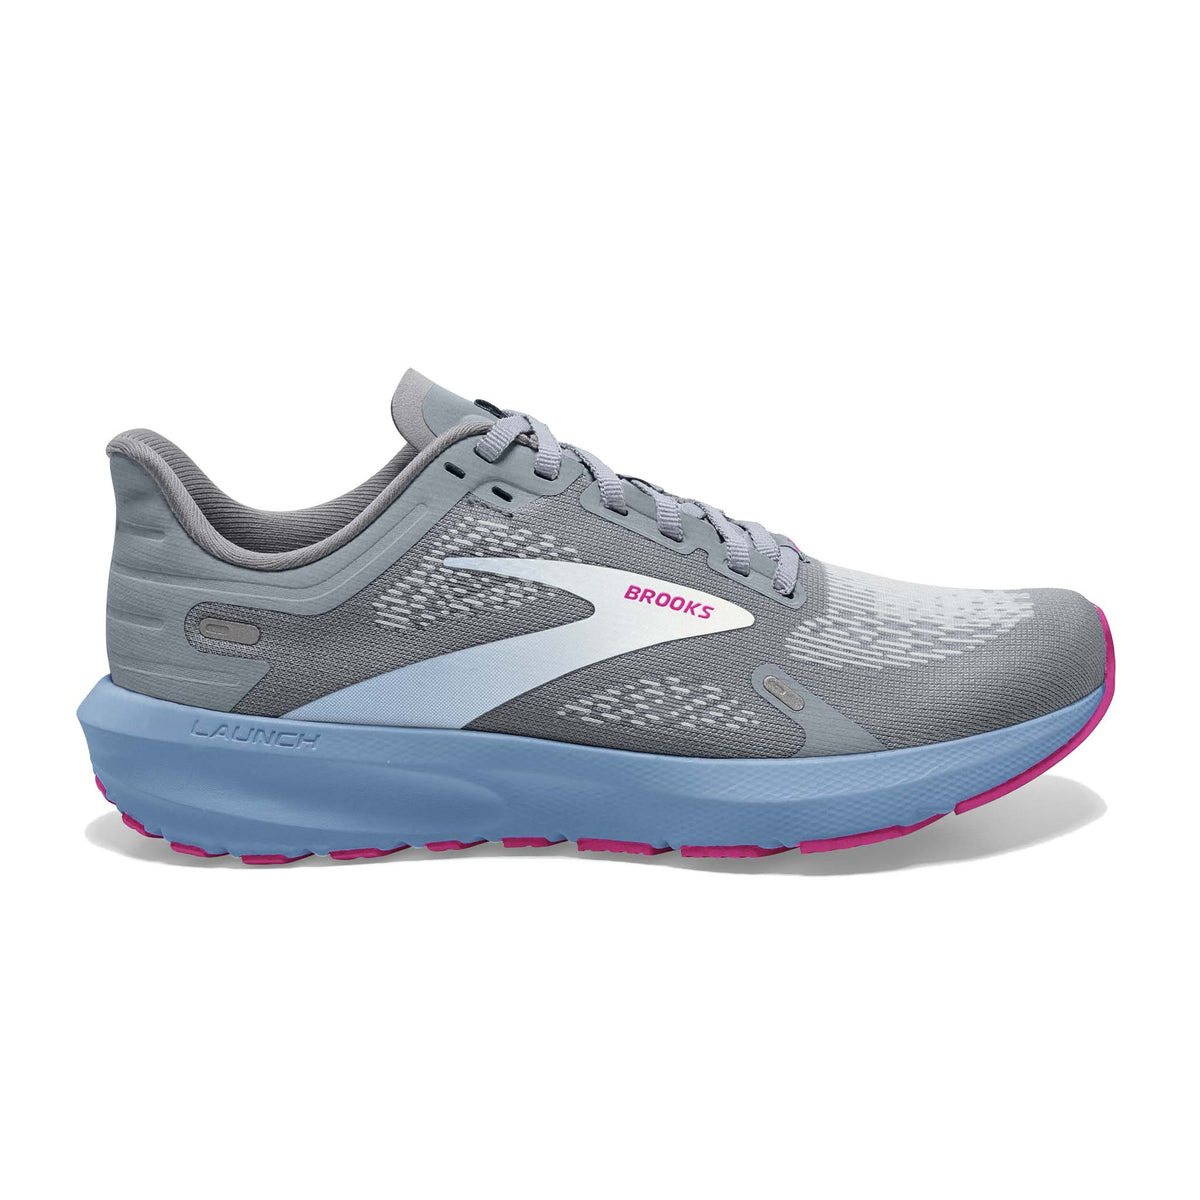 Brooks Launch 9 running femme - grey blue pink